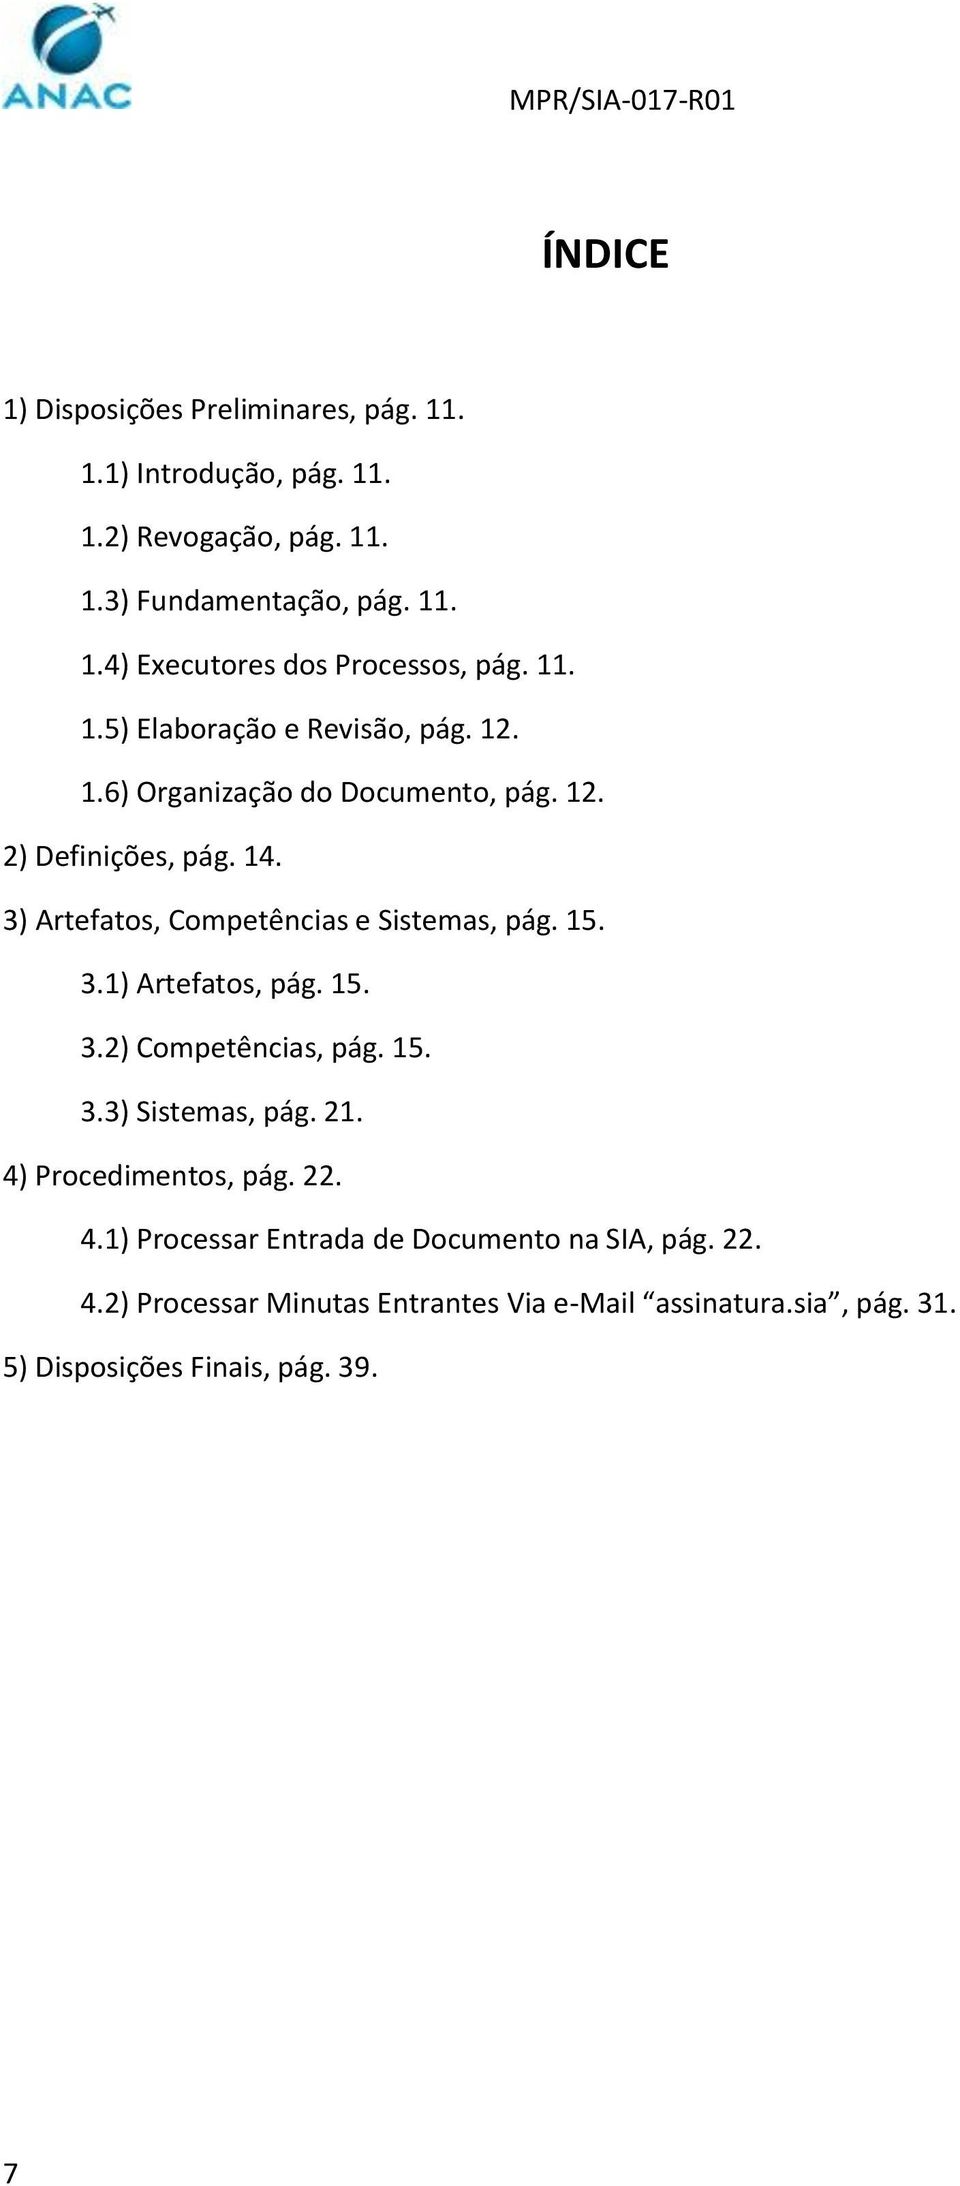 3) Artefatos, Competências e Sistemas, pág. 15. 3.1) Artefatos, pág. 15. 3.2) Competências, pág. 15. 3.3) Sistemas, pág. 21.